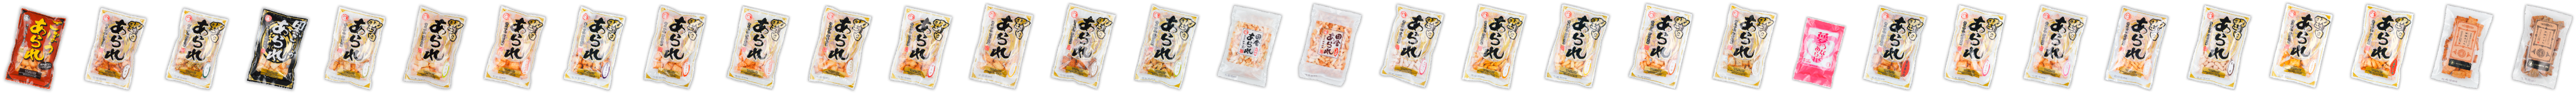 野田米菓の商品パッケージ一覧